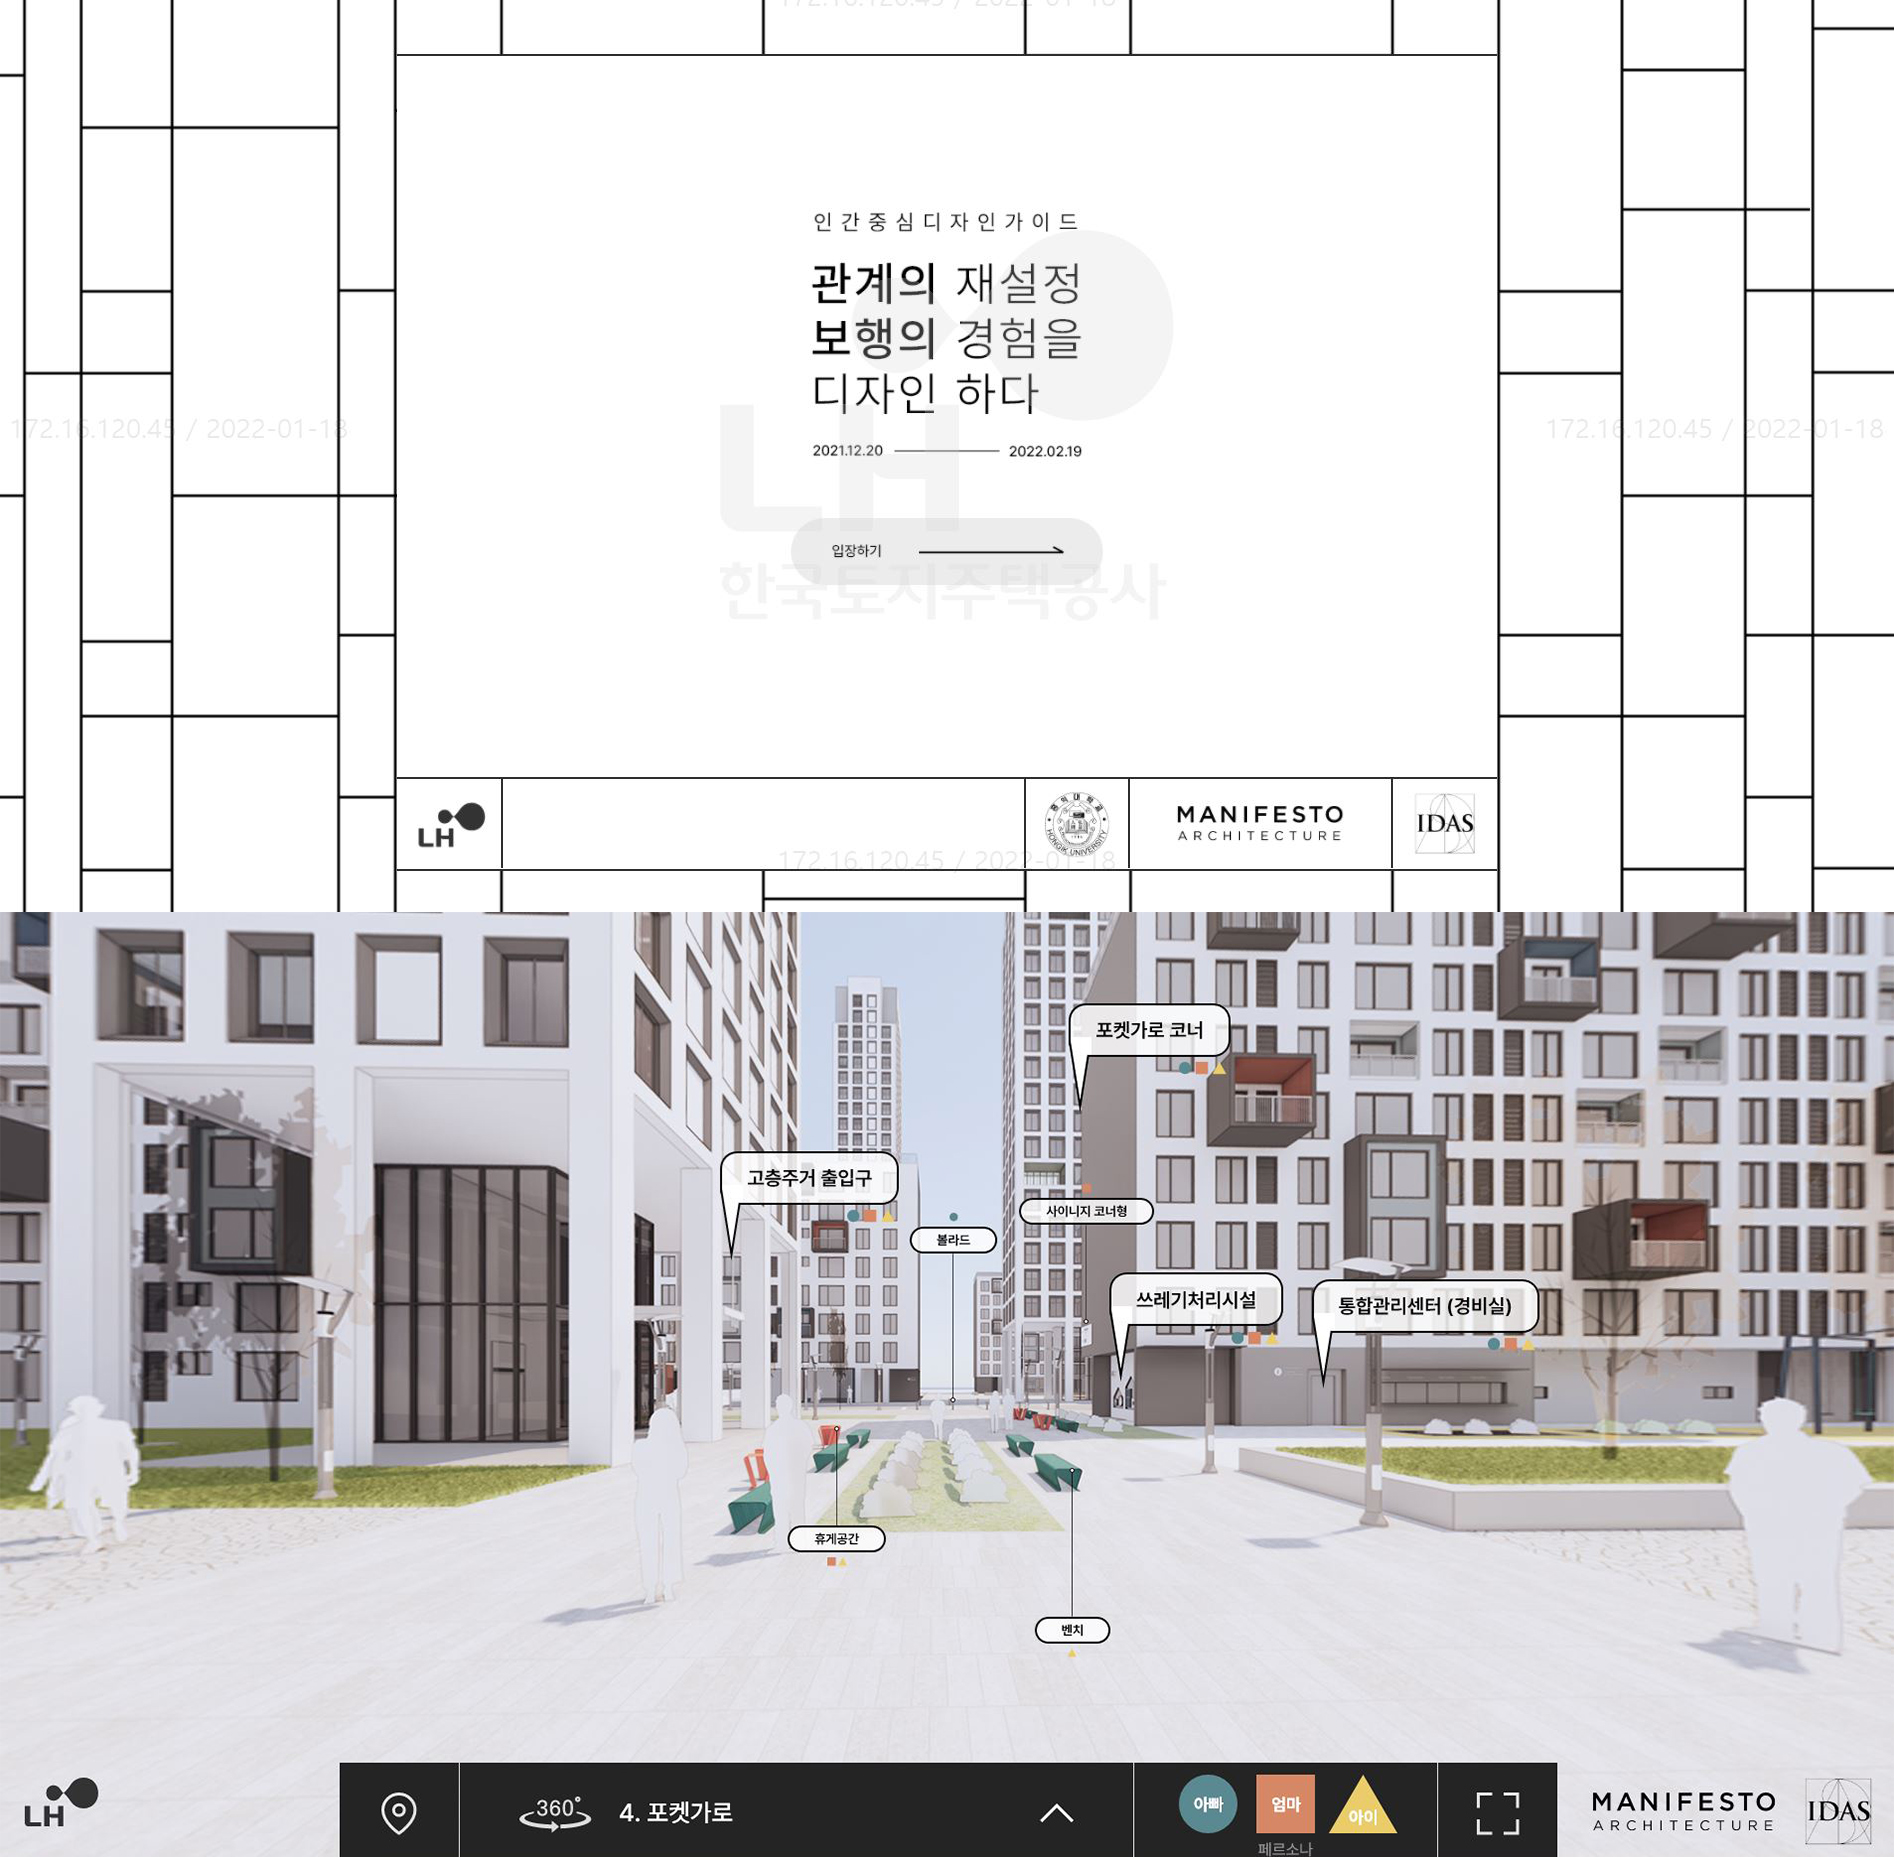 인간중심 공공주택 디자인 가상체험 온라인 전시회 개최 안내